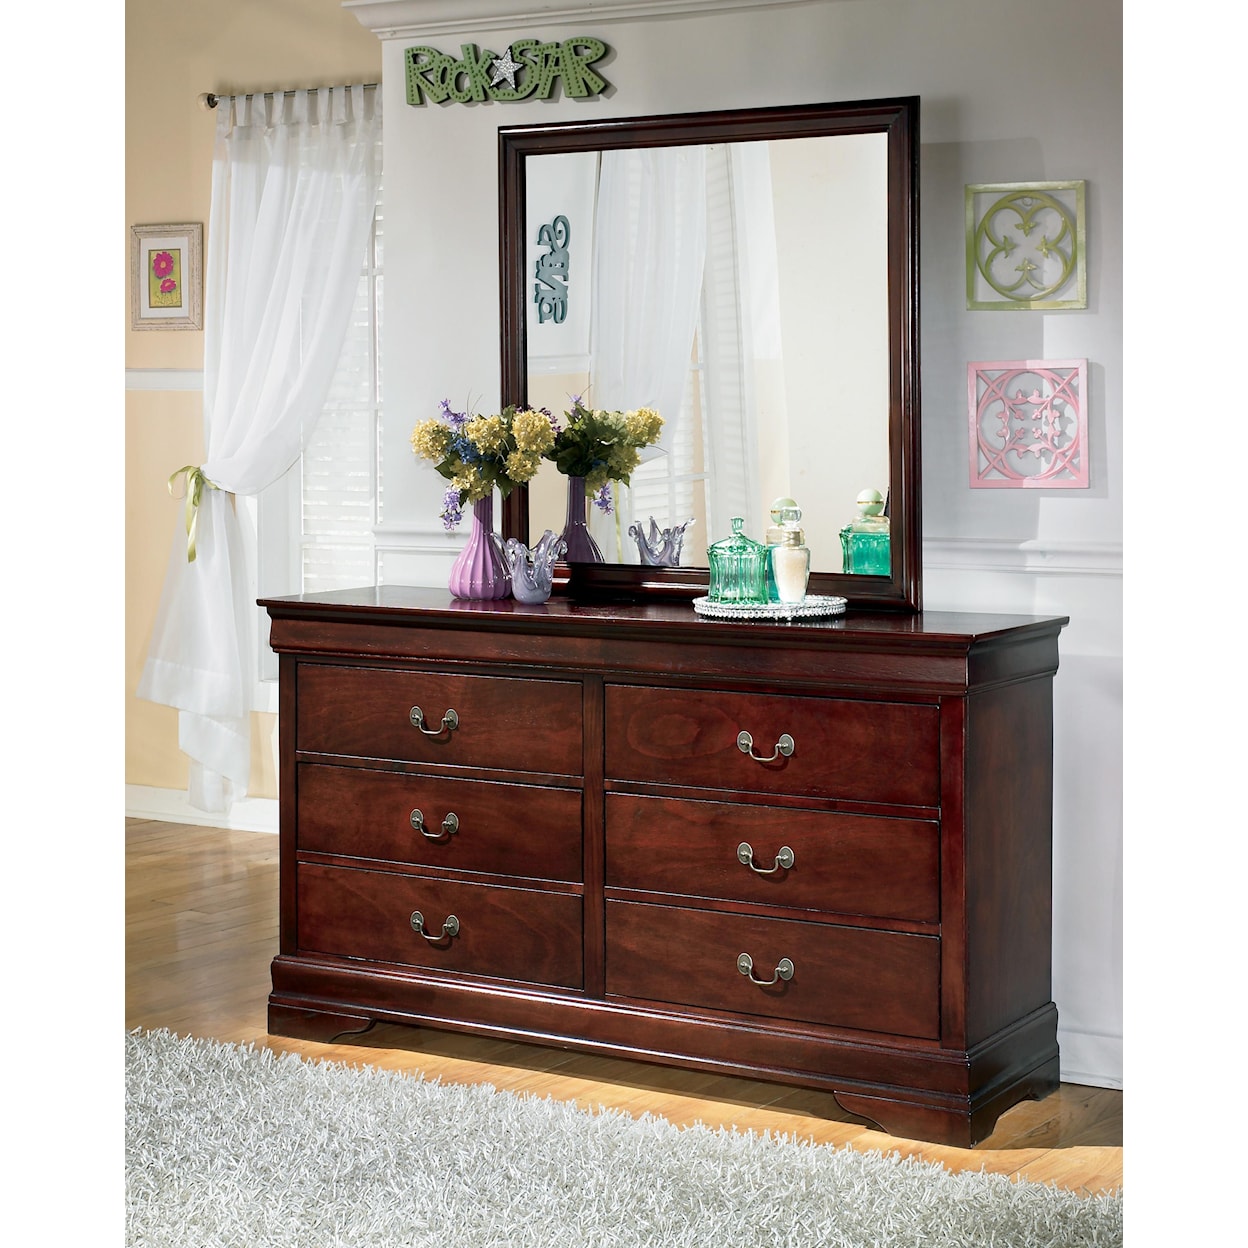 Ashley Furniture Signature Design Alisdair Bedroom Mirror